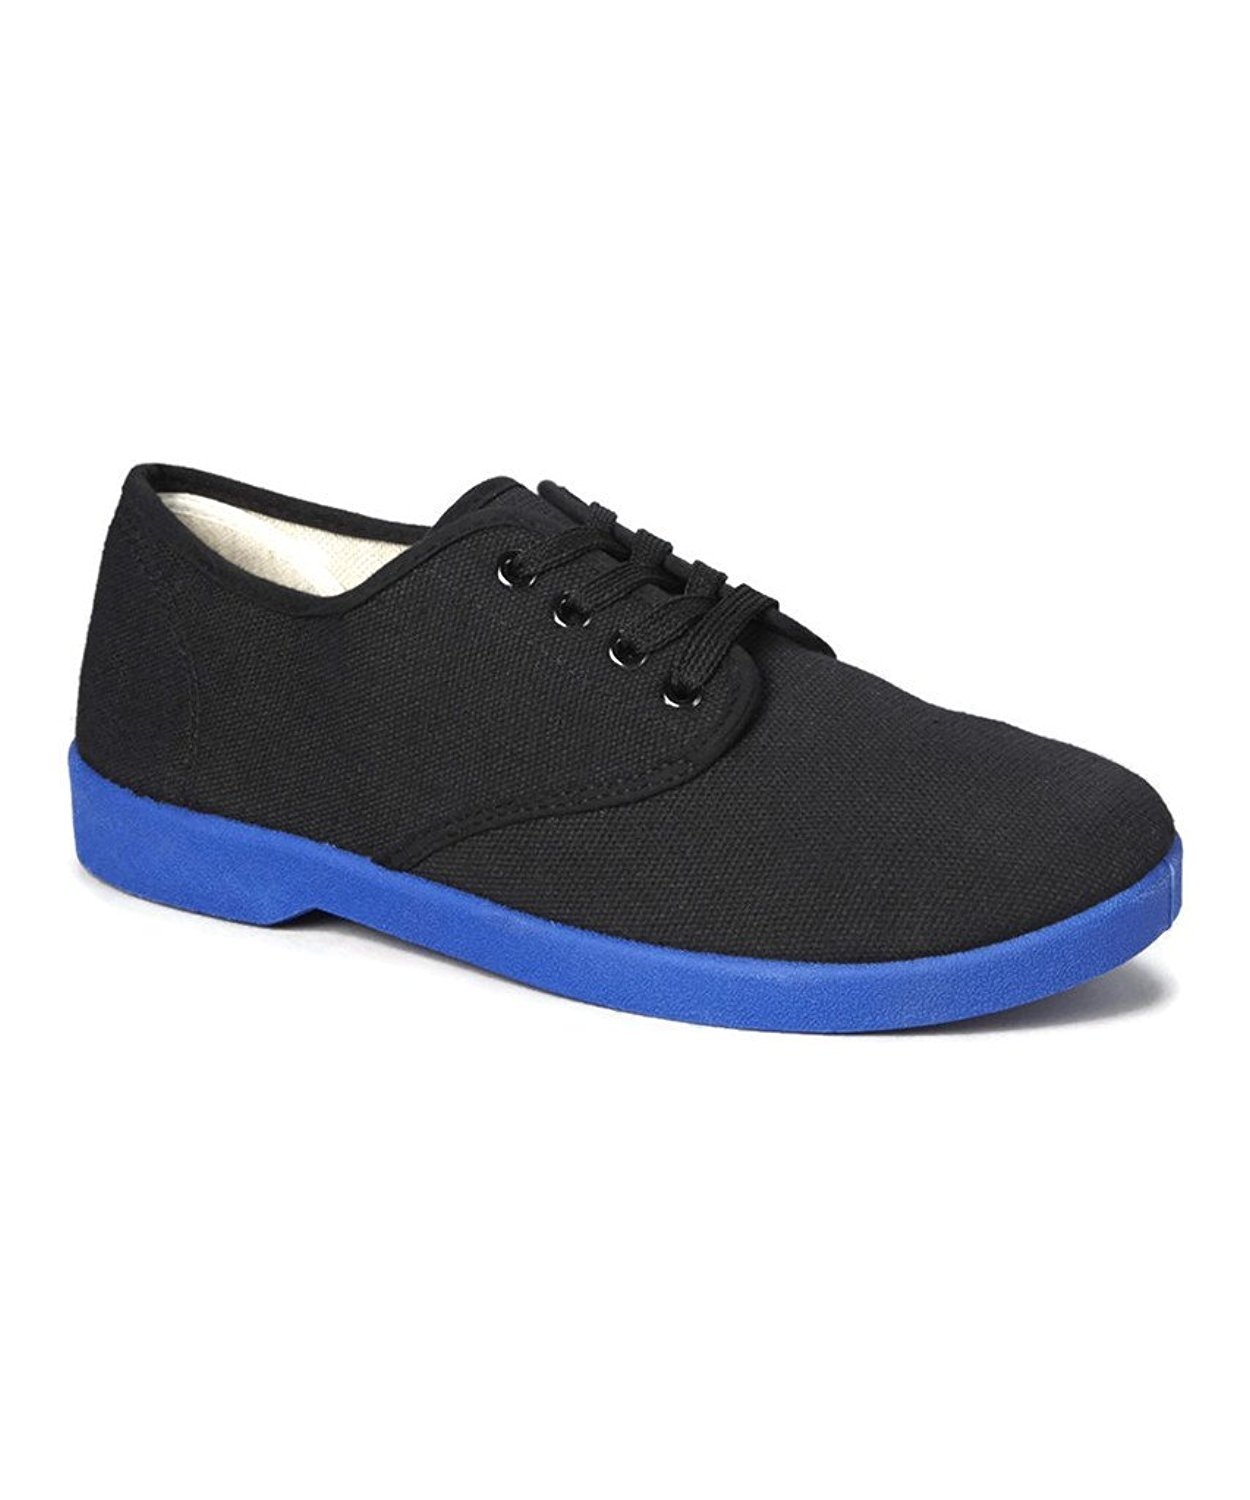 Zig Zag Men's Canvas Oxford Shoes-Blue Sole-Black,Navy,White 2 Lace Colors!  | eBay